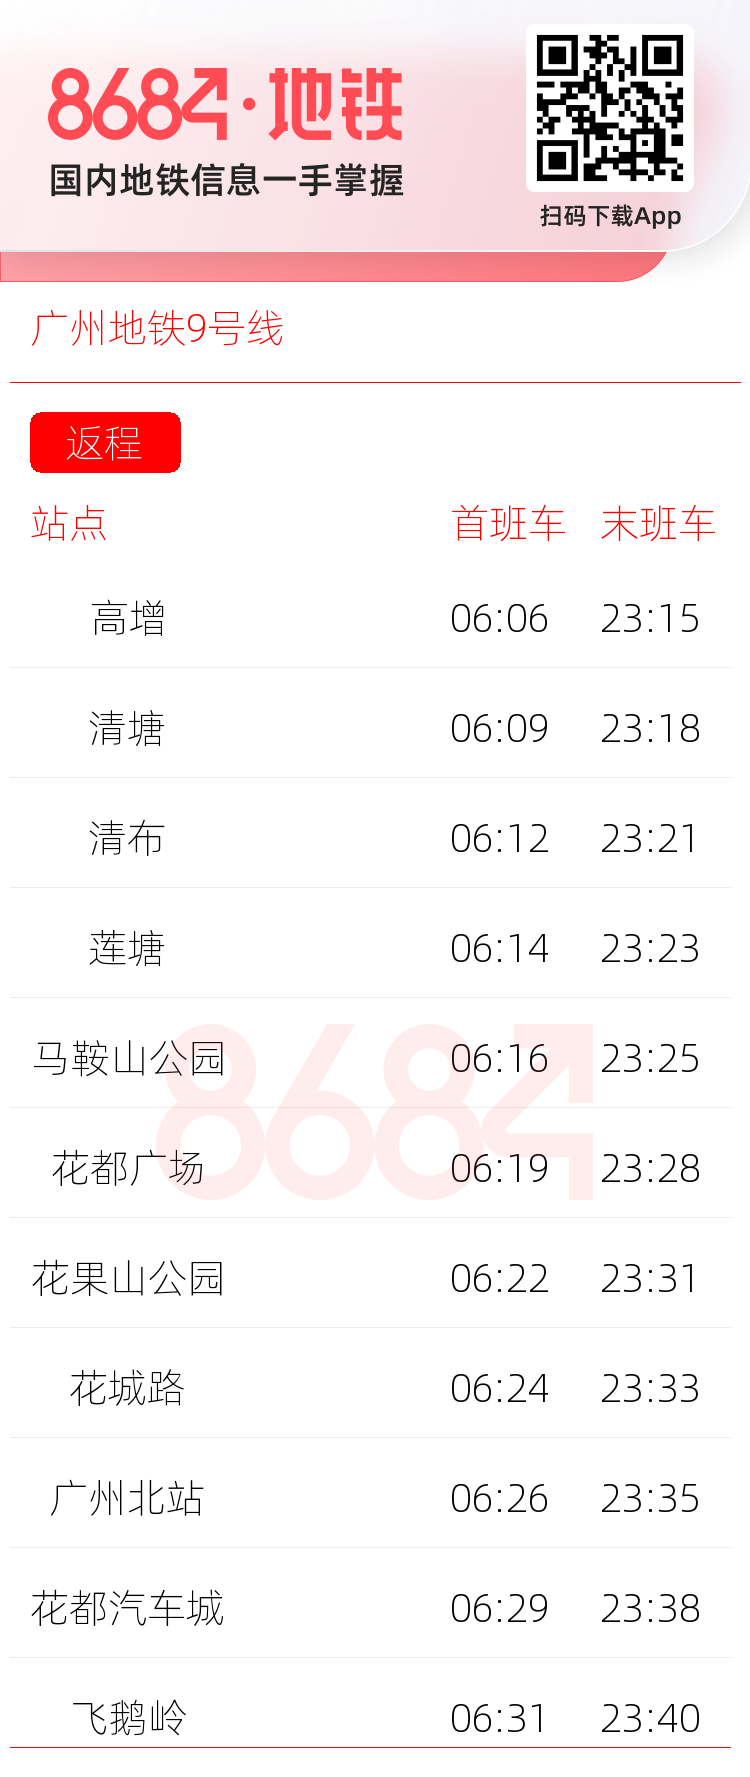 广州地铁9号线运营时间表